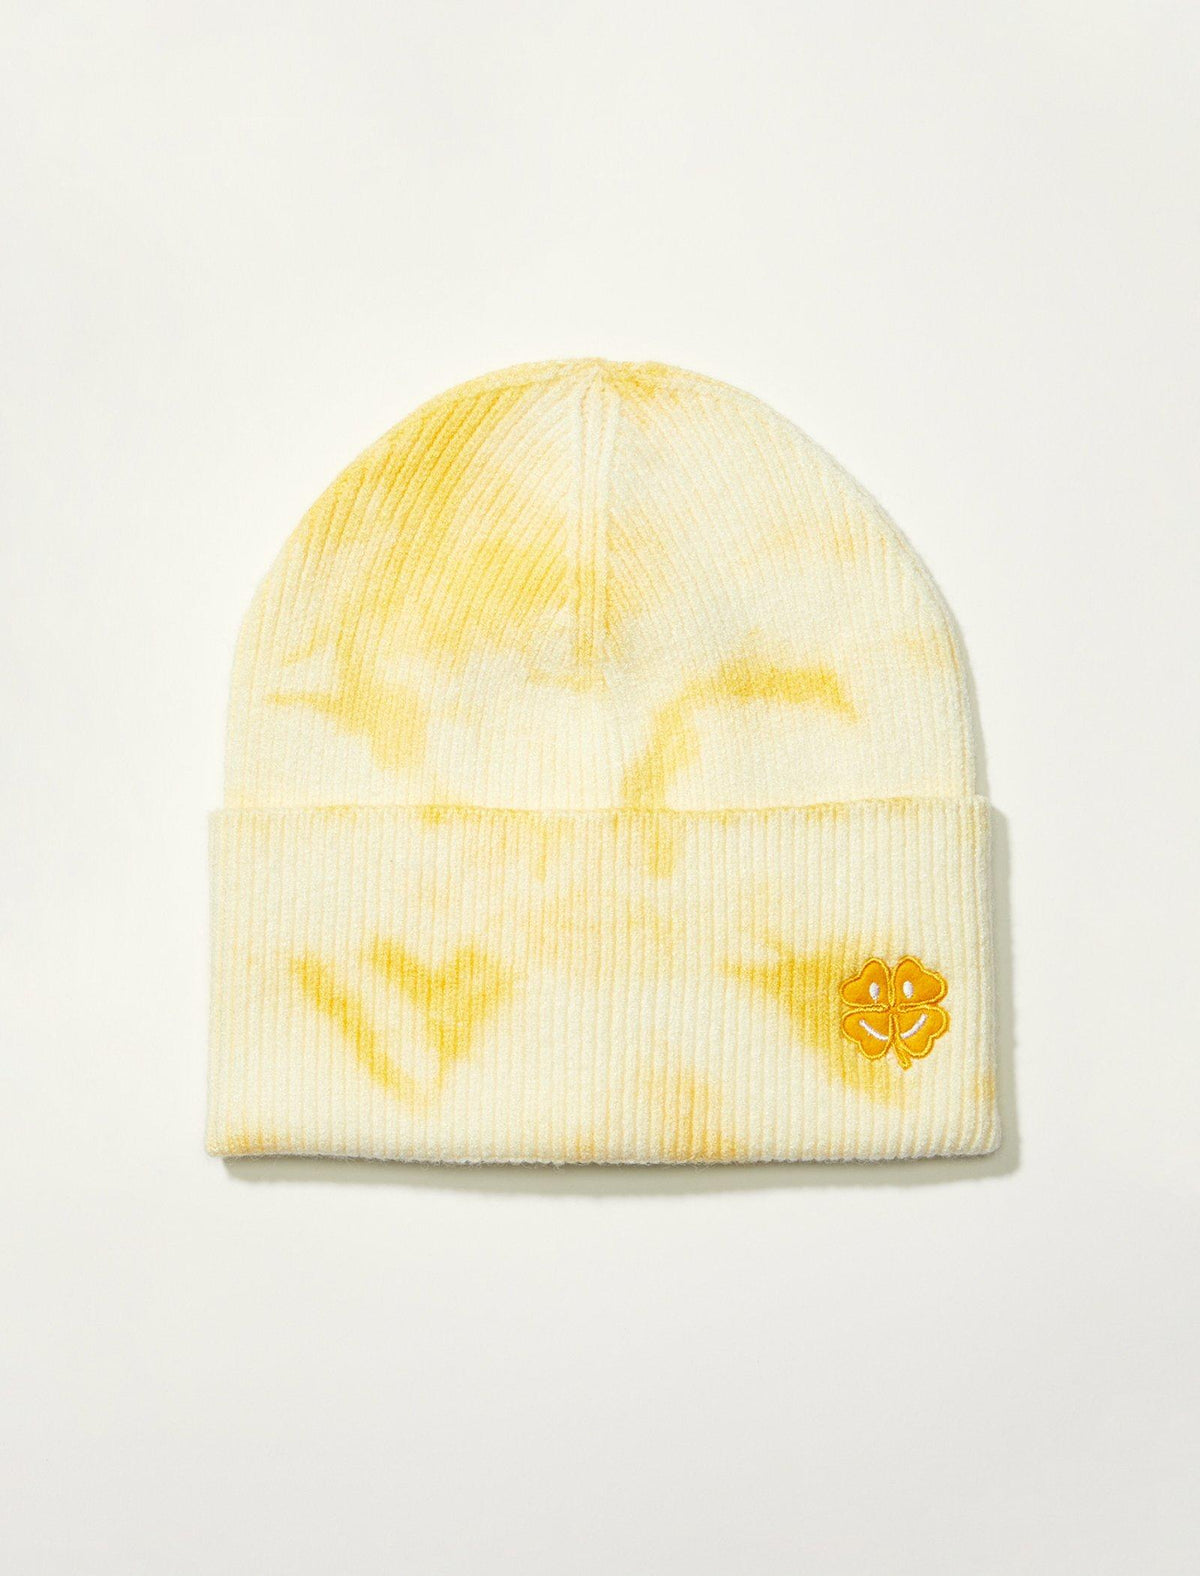 Lucky Brand Tie Dye Smiley Beanie - Women's Accessories Hats Beanie Winter Hat Dark Yellow